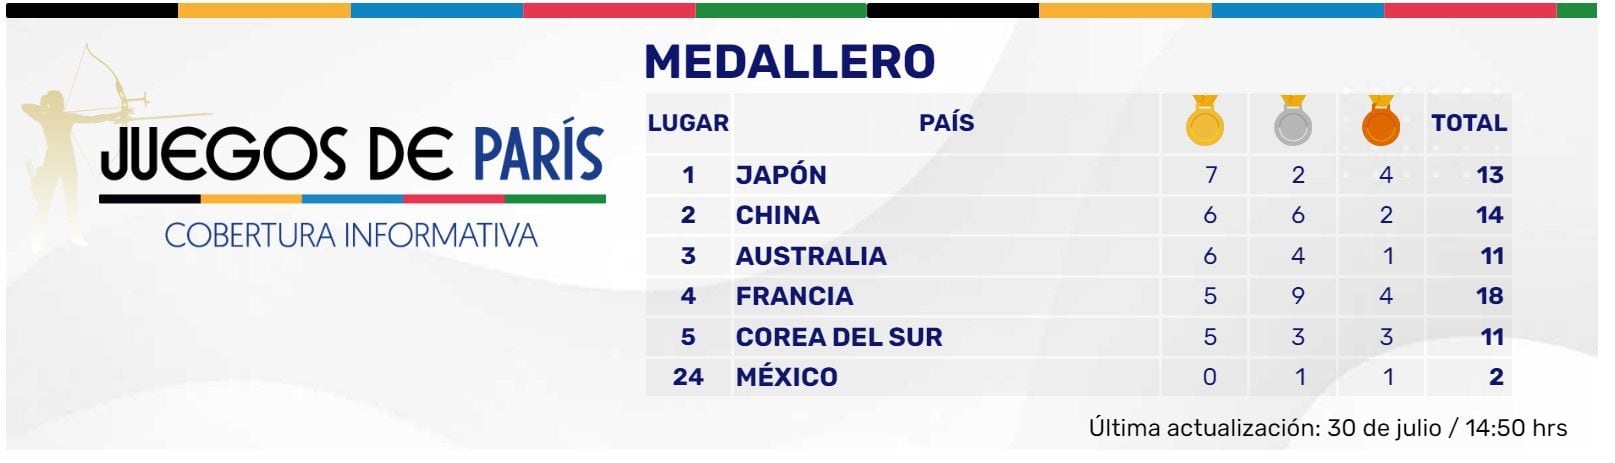 México lleva 2 medallas en los Juegos Olímpicos de París 2024.